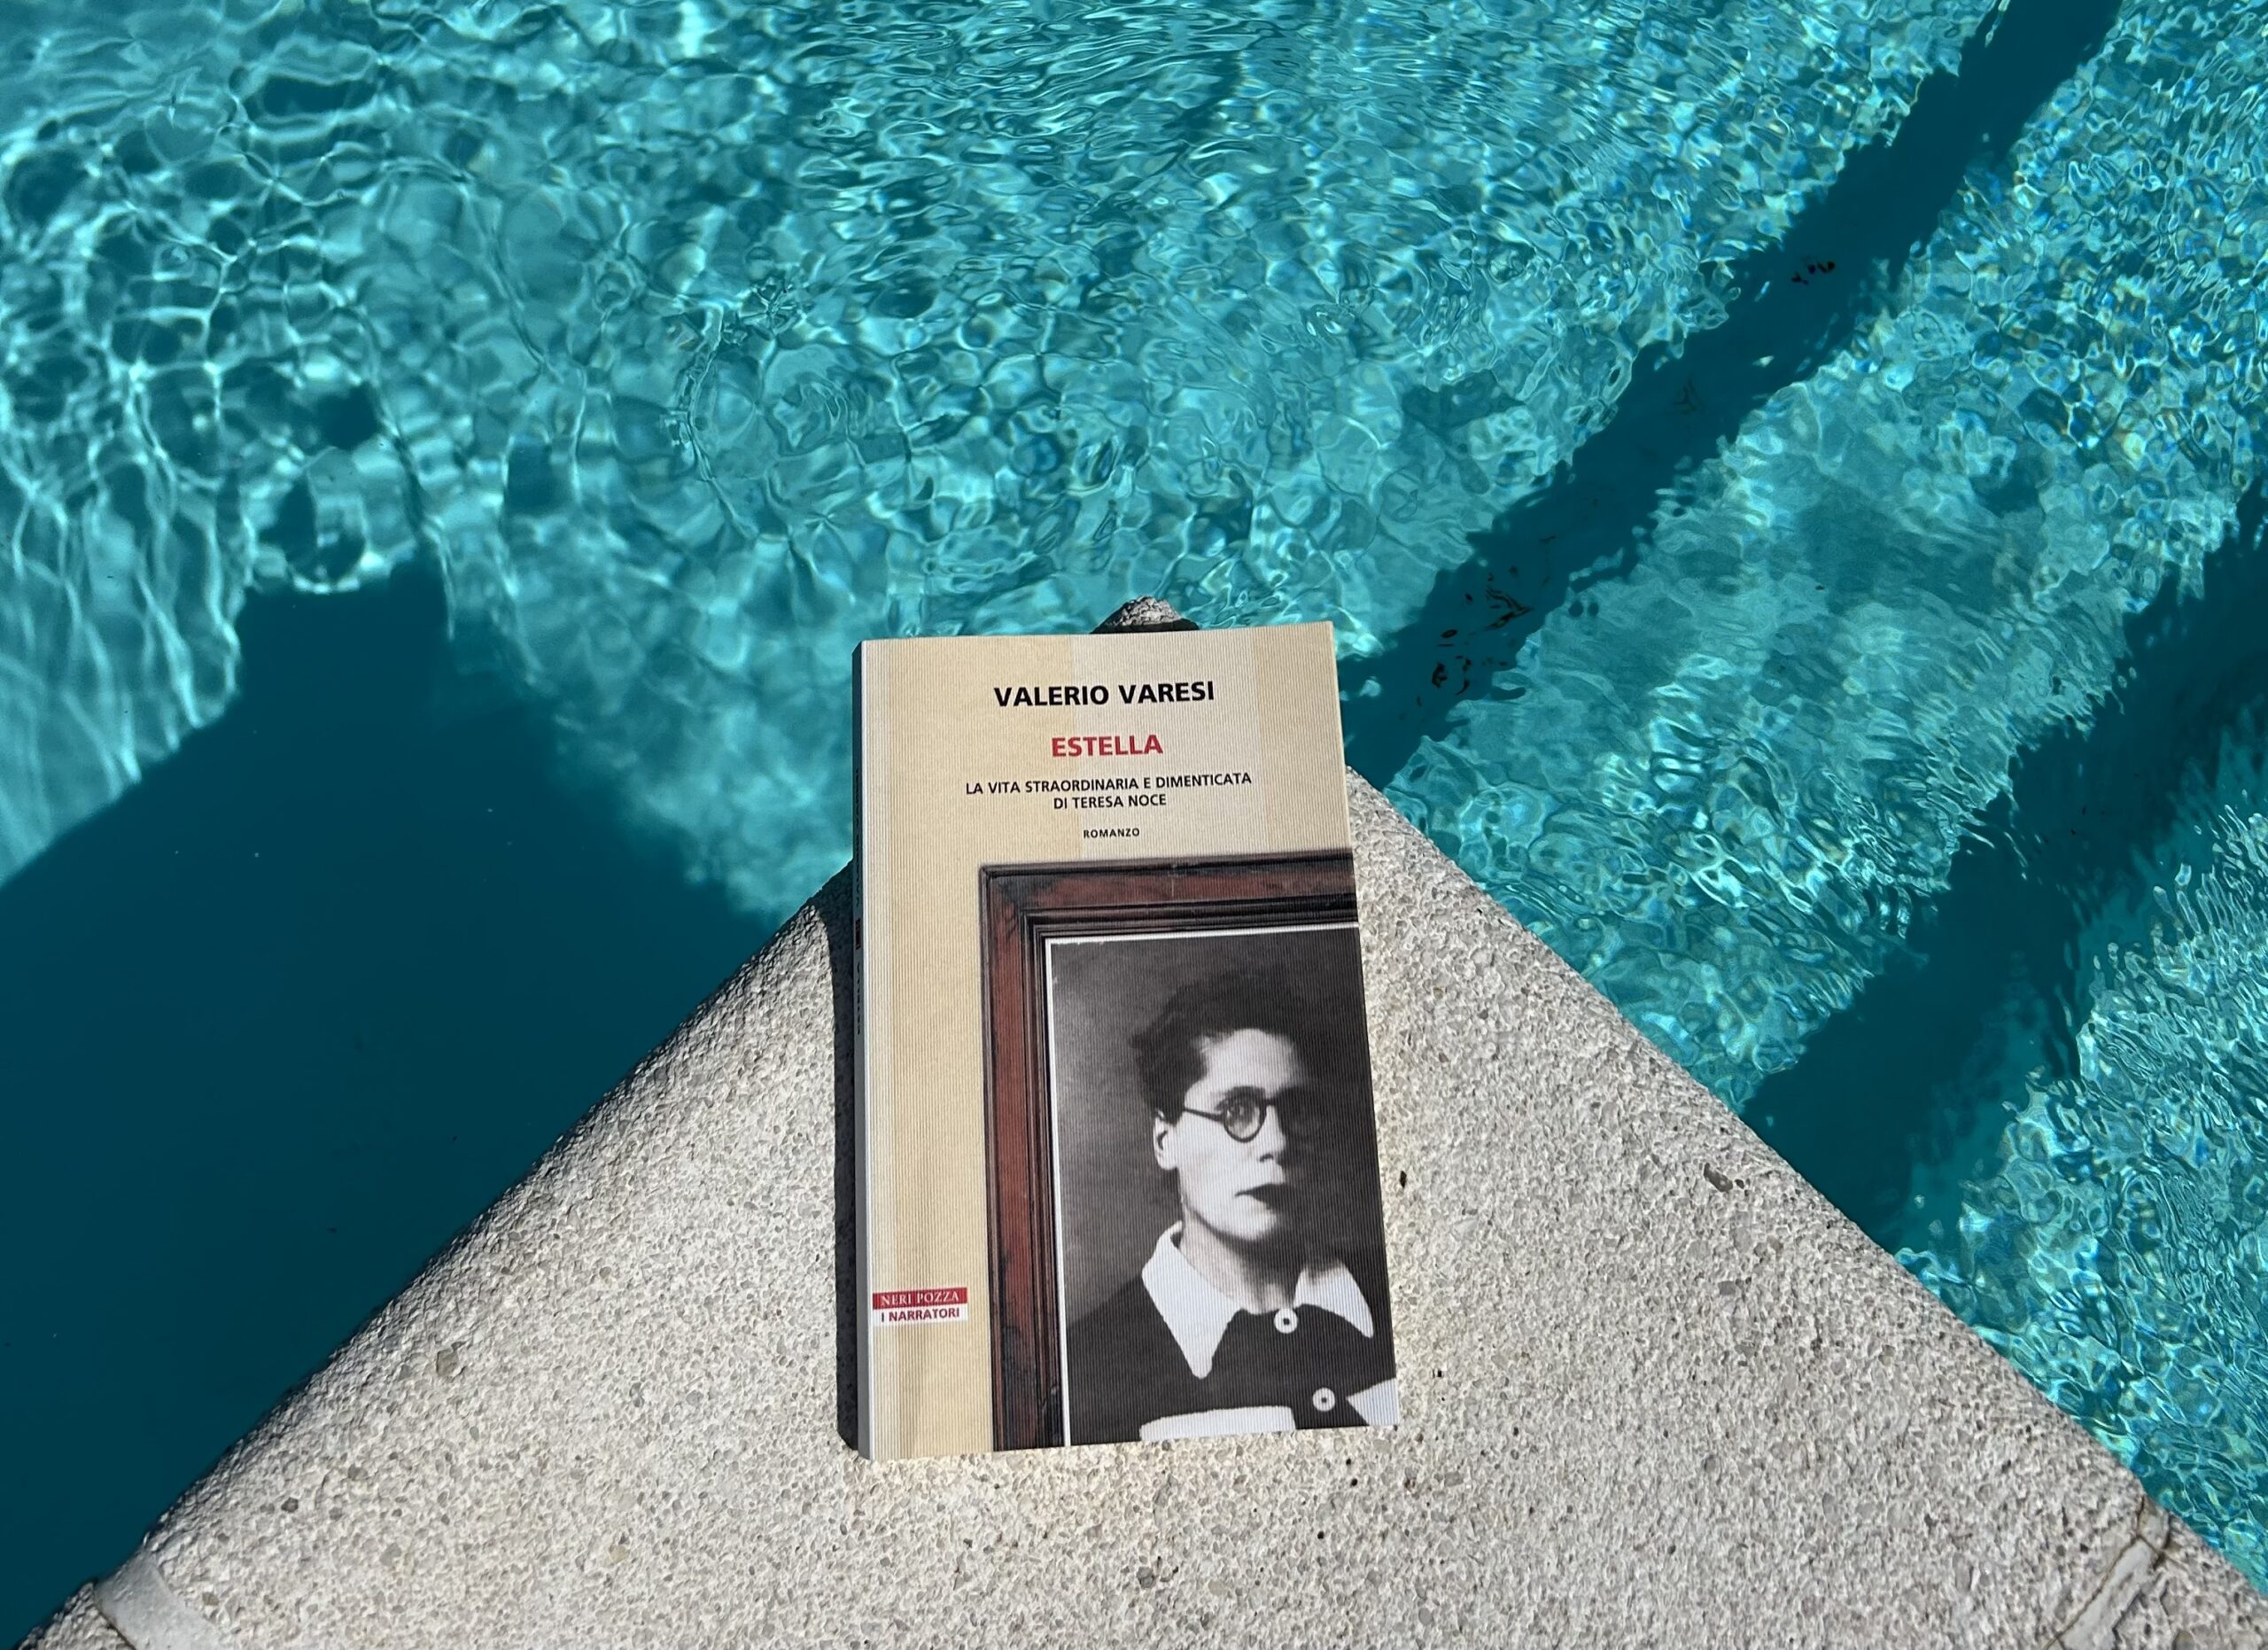 La vita straordinaria e dimenticata di Teresa Noce in un libro fra luce e ombra